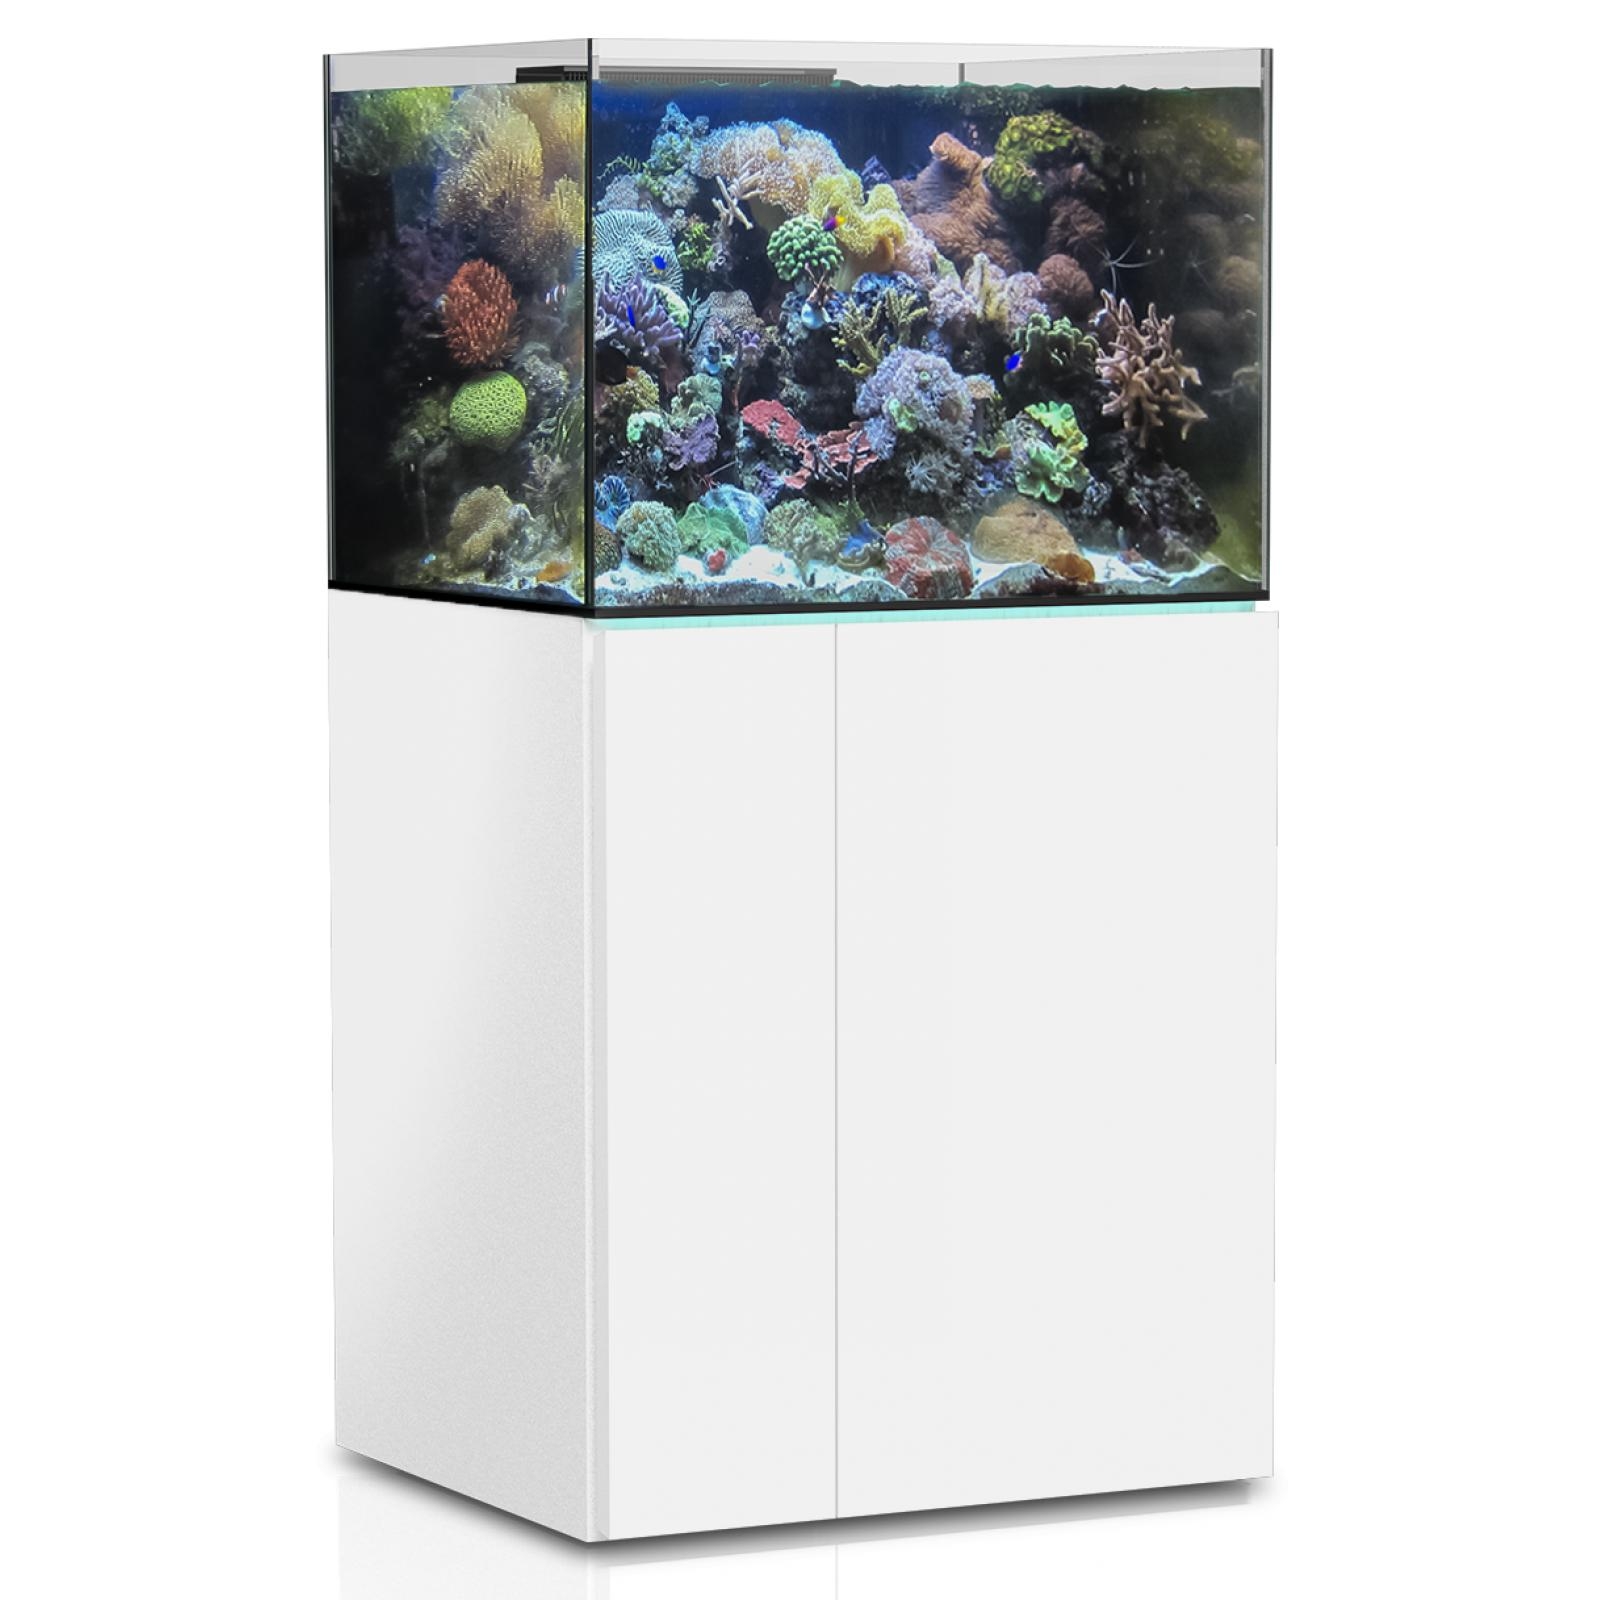  Aqua Medic Aquarium - Armatus 500 XD white